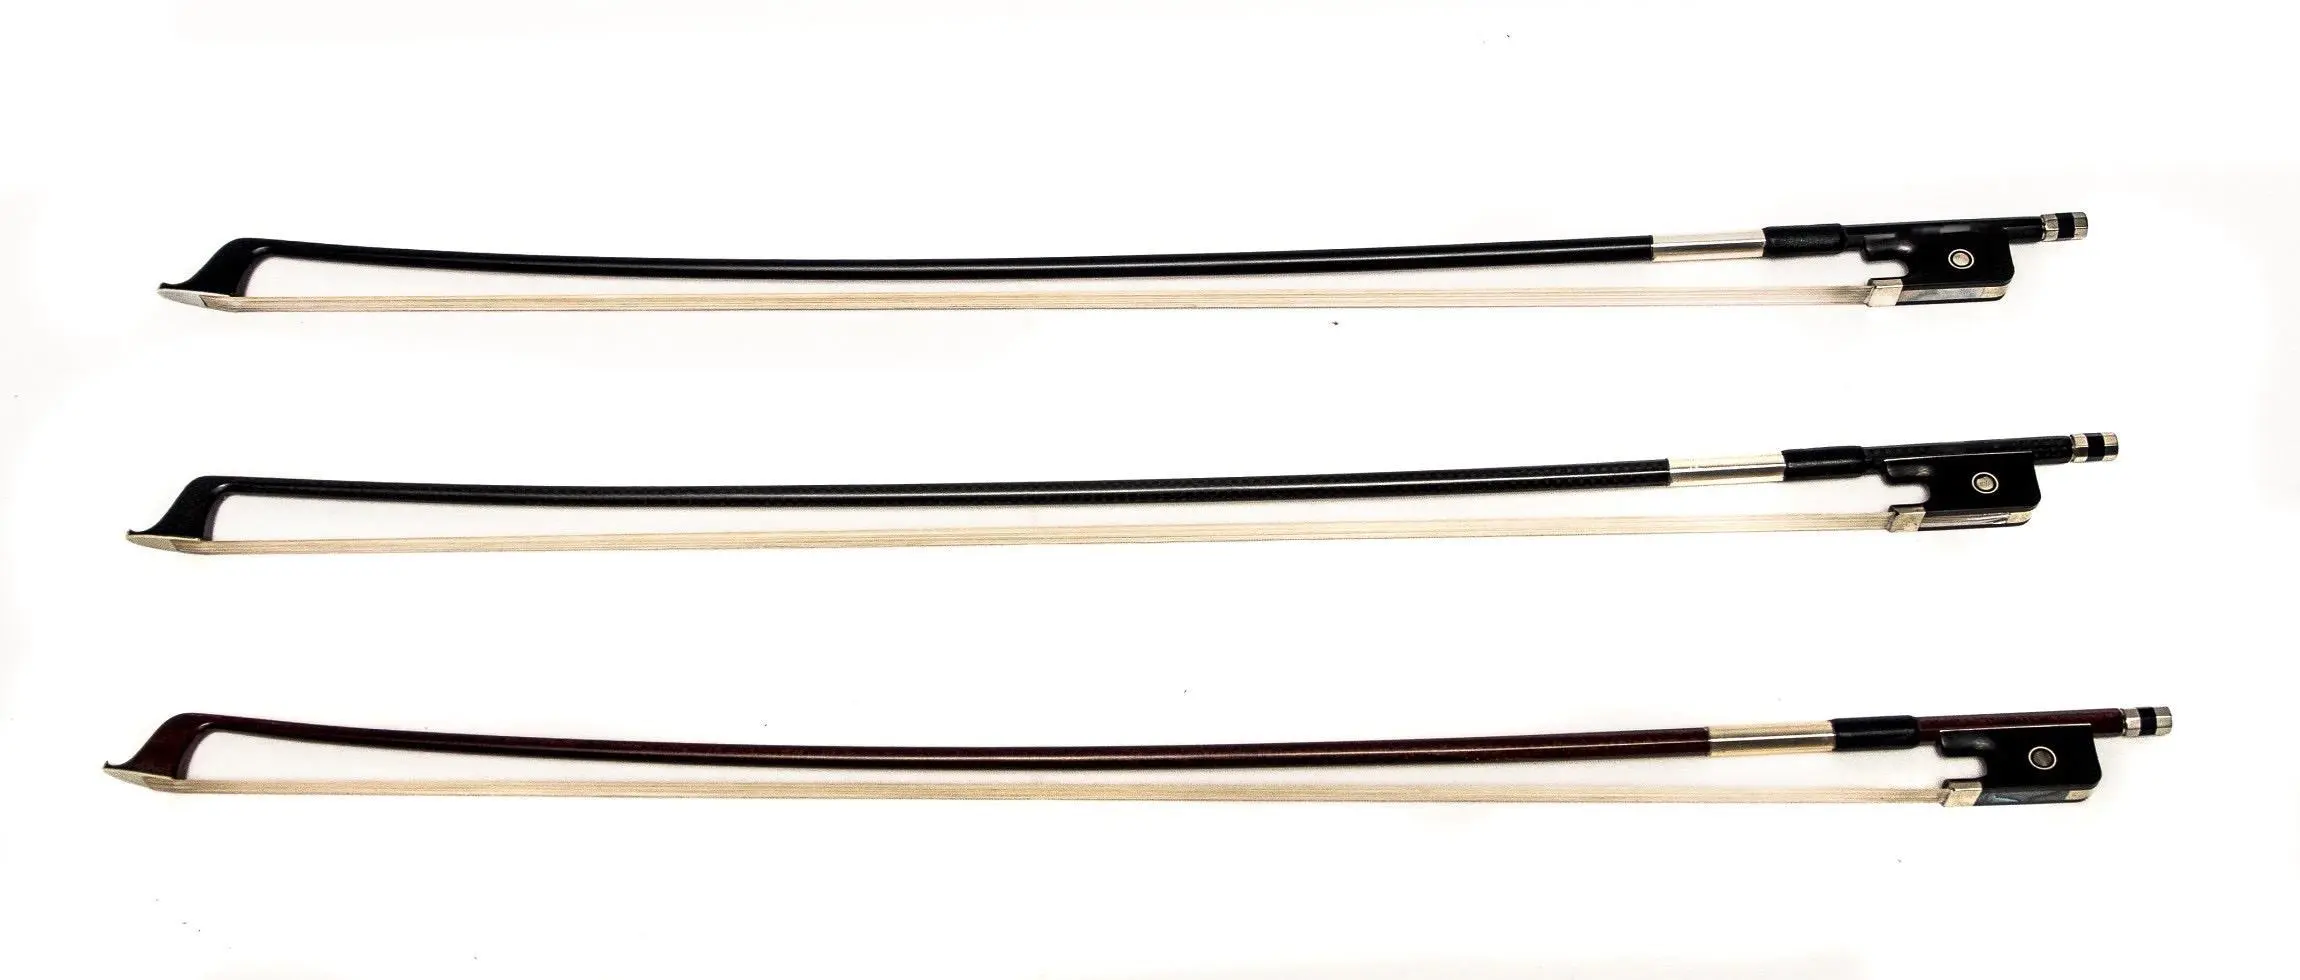 arco de violín cual mejor fibra de carbono o madera - Son buenos los arcos de violín de fibra de carbono